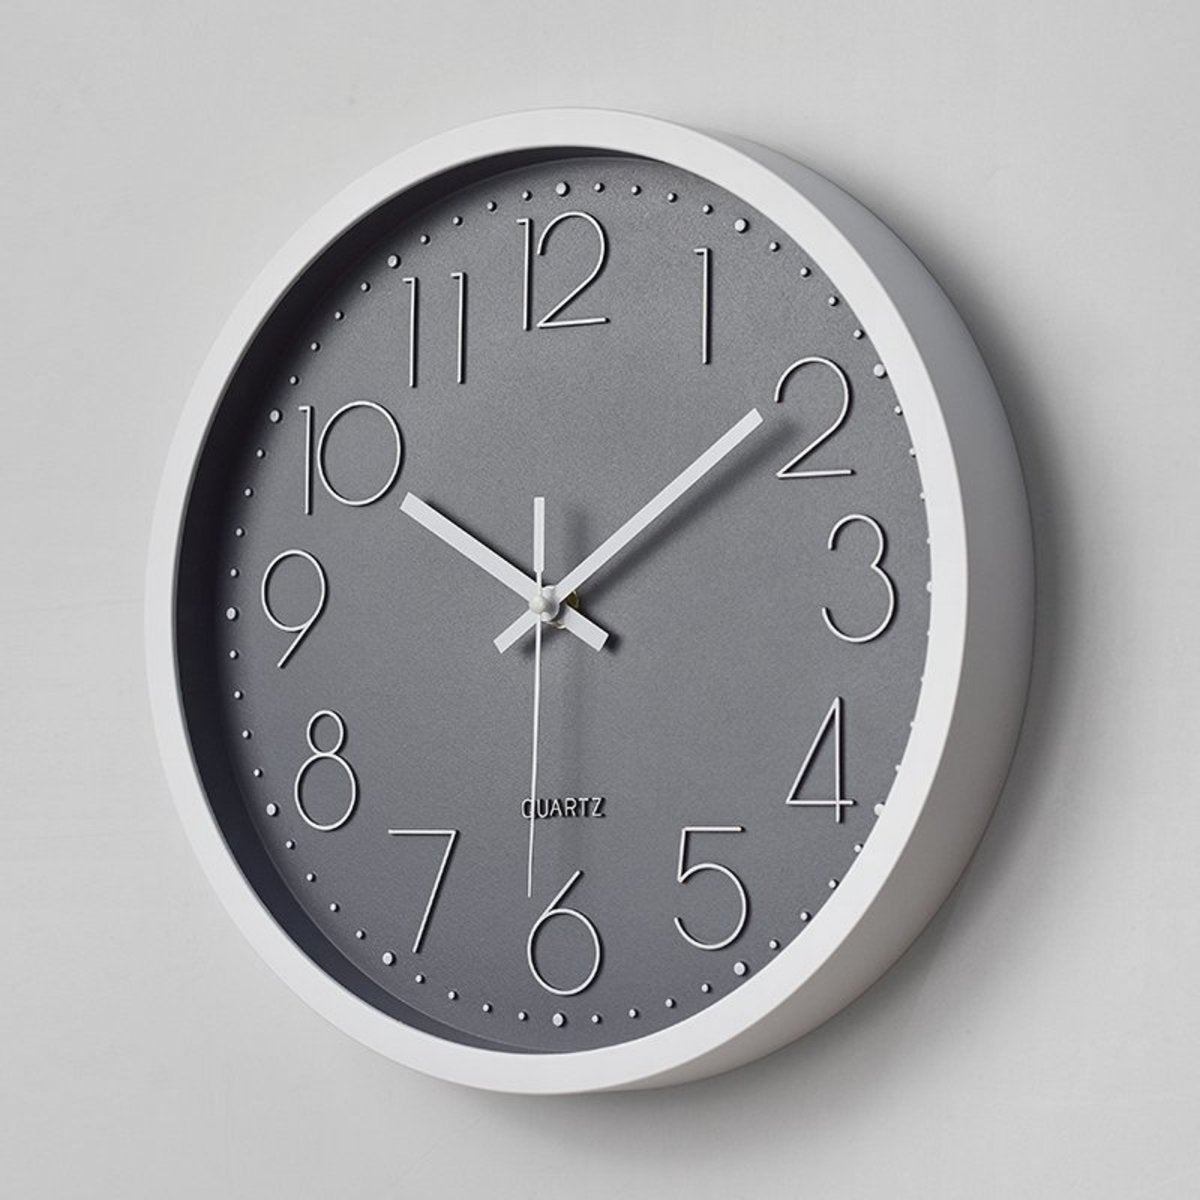 10英寸 現代簡約個性創意圓形壁鐘 靜音掛鐘 時尚客廳數字掛鐘時尚 客廳掛鐘 碳灰 電子鐘